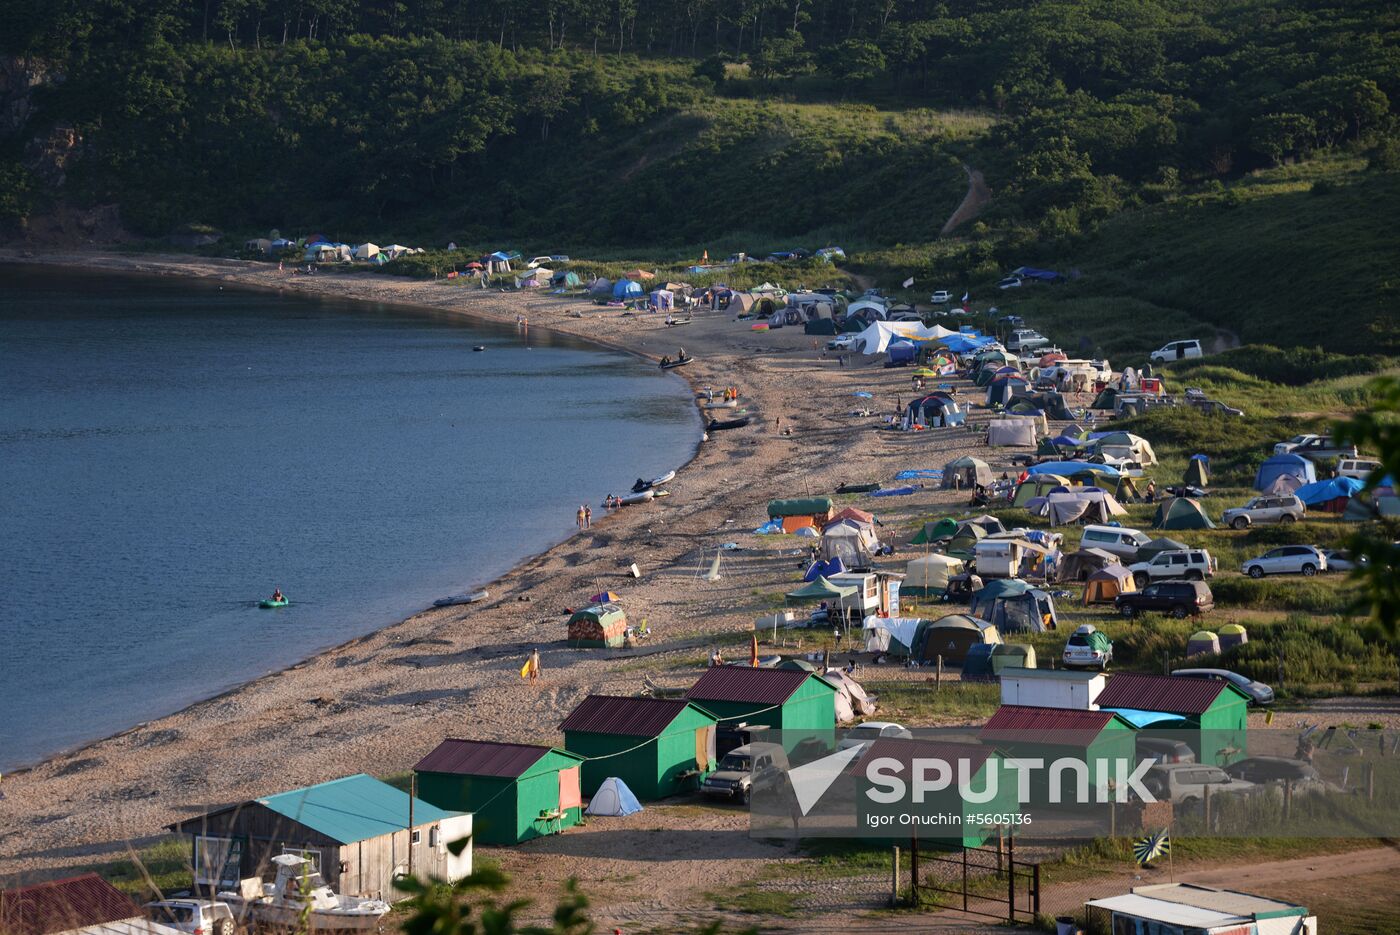 Putyatin Island in Primorye Territory